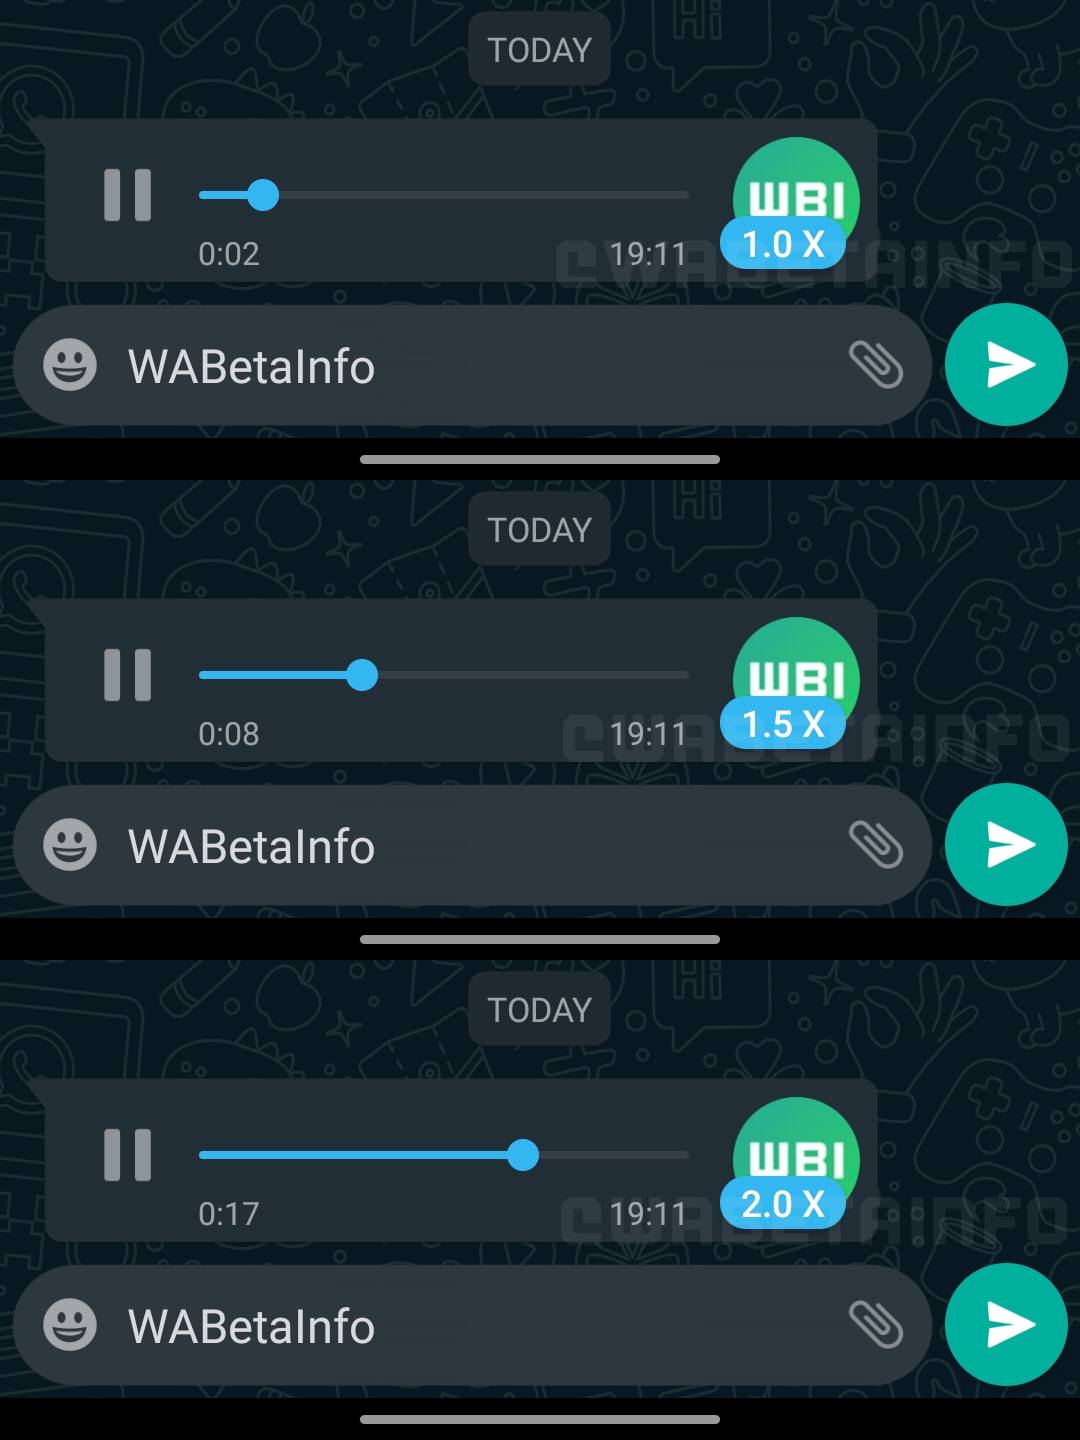 WhatsApp hastighet röstmeddelanden